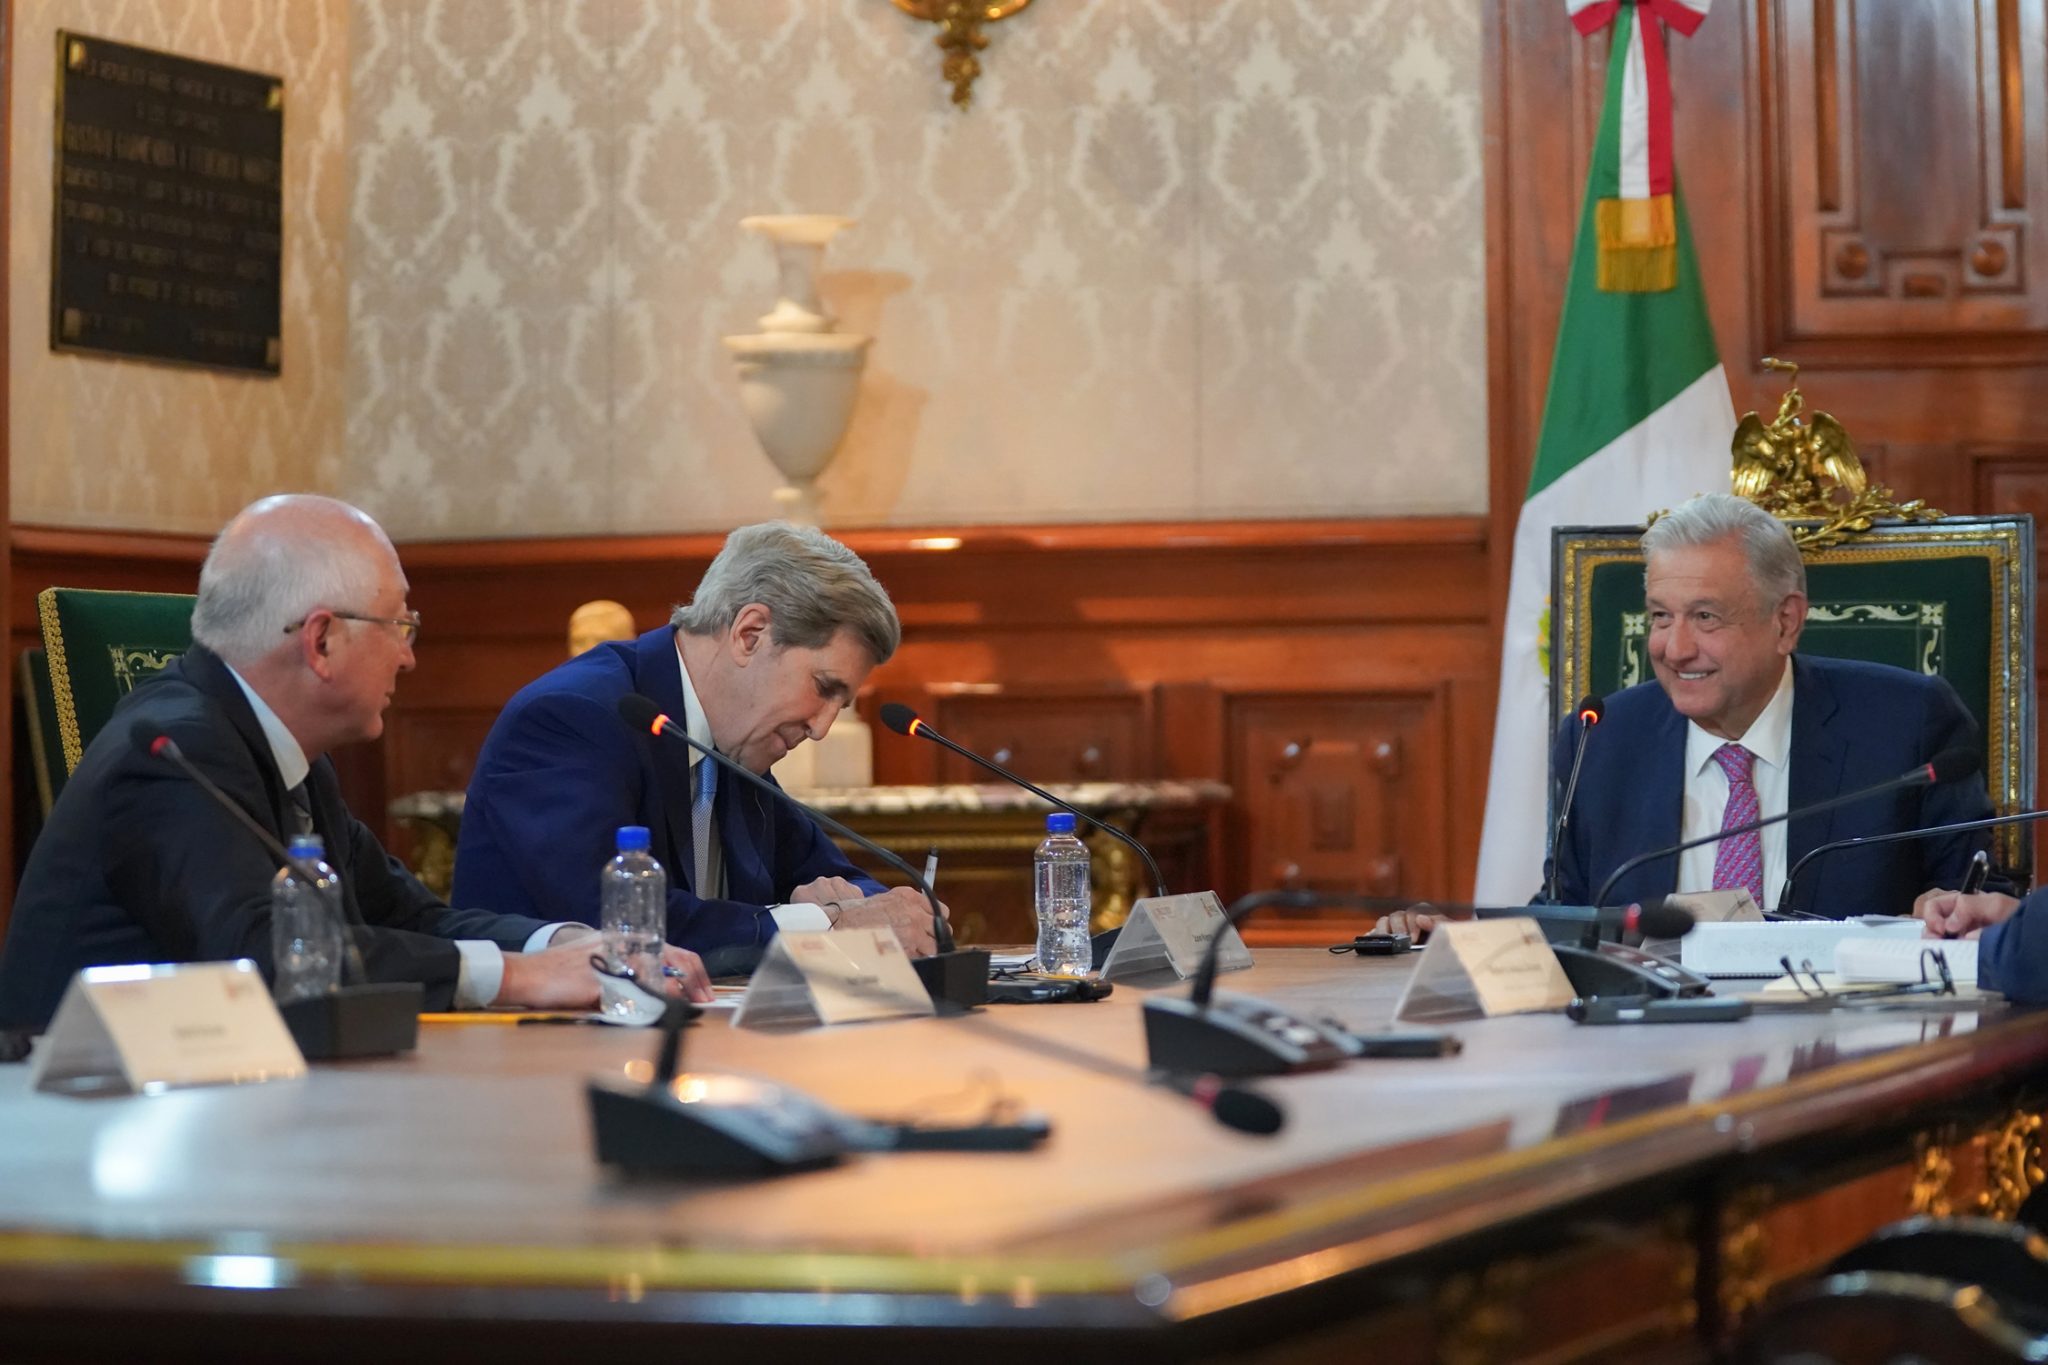 ue fructífera la reunión con Kerry, opina AMLO